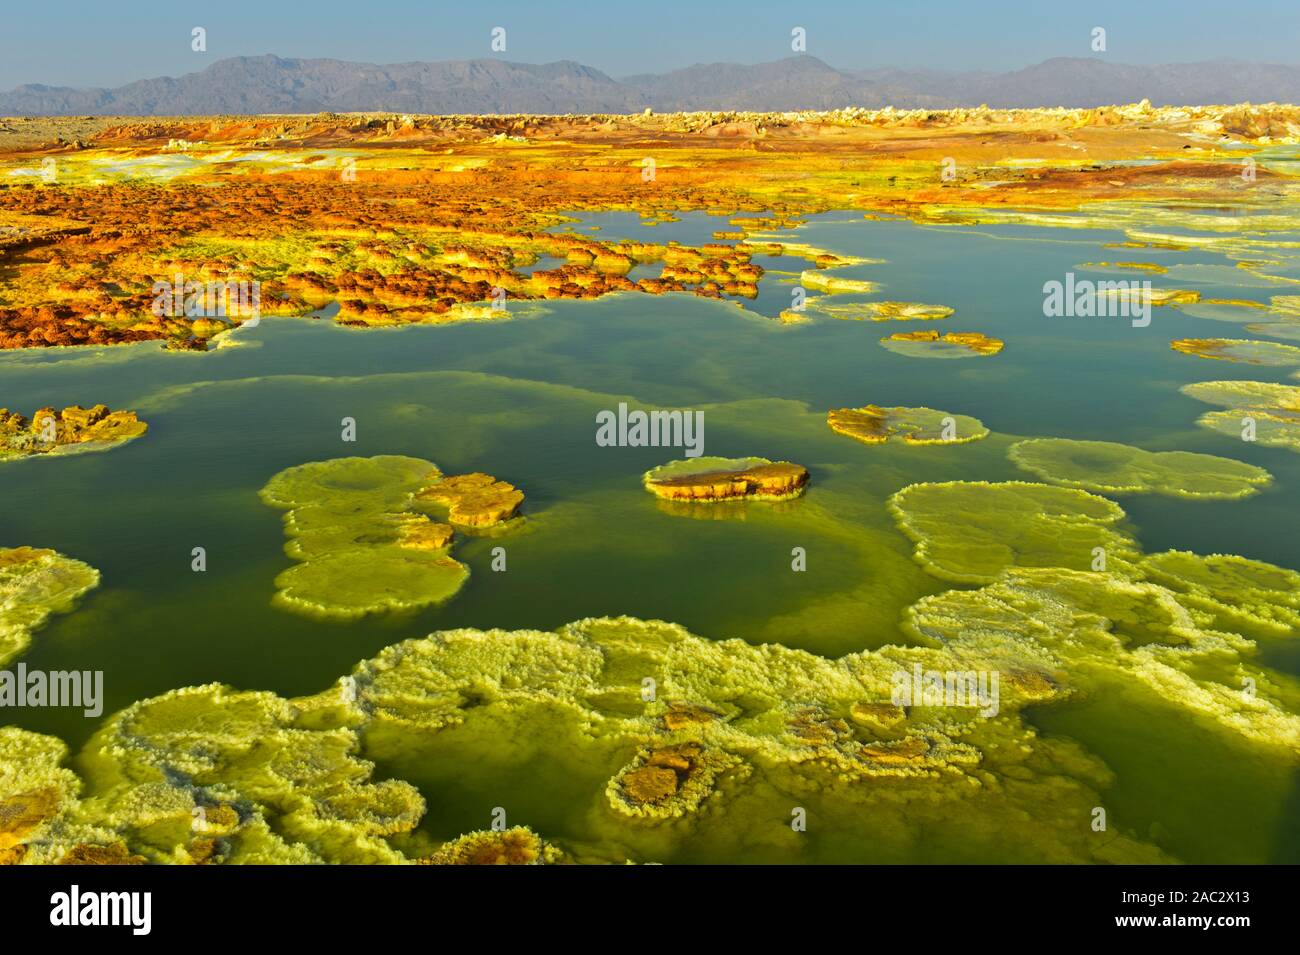 Les sulfures cristallisé dans une saumure acide le champ géothermique de piscine, de dépression Danakil, Dallol, Triangle Afar, Ethiopie Banque D'Images